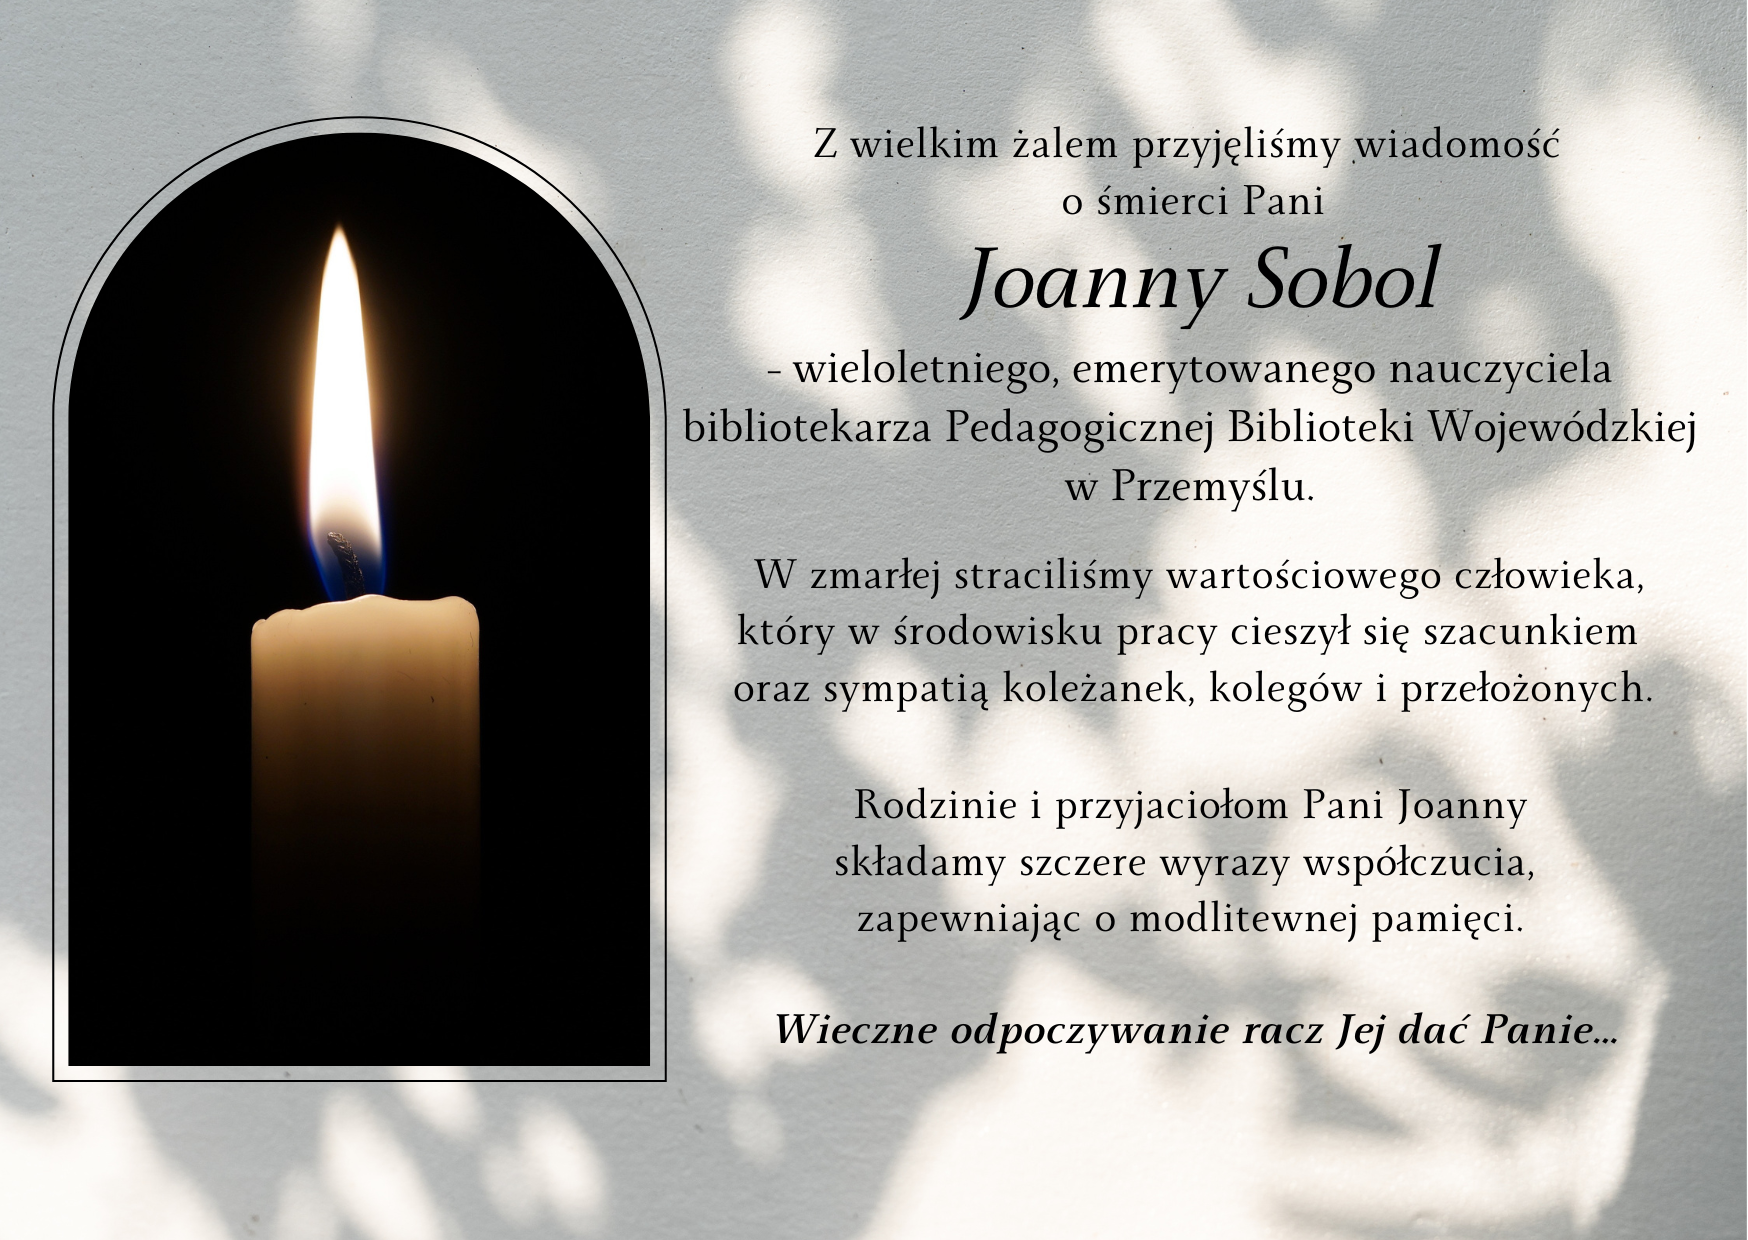 Z wielkim żalem przyjęliśmy wiadomość o śmierci pani Joanny Sobol -  wieloletniego, emerytowanego pracownika Pedagogicznej Biblioteki Wojewódzkiej im. J. G. Pawlikowskiego w Przemyślu. Rodzinie i przyjaciołom Pani Joanny składamy szczere wyrazy współczucia z powodu Jej śmierci, zapewniając o modlitewnej pamięci. Wieczne odpoczywanie racz Mu dać Panie…